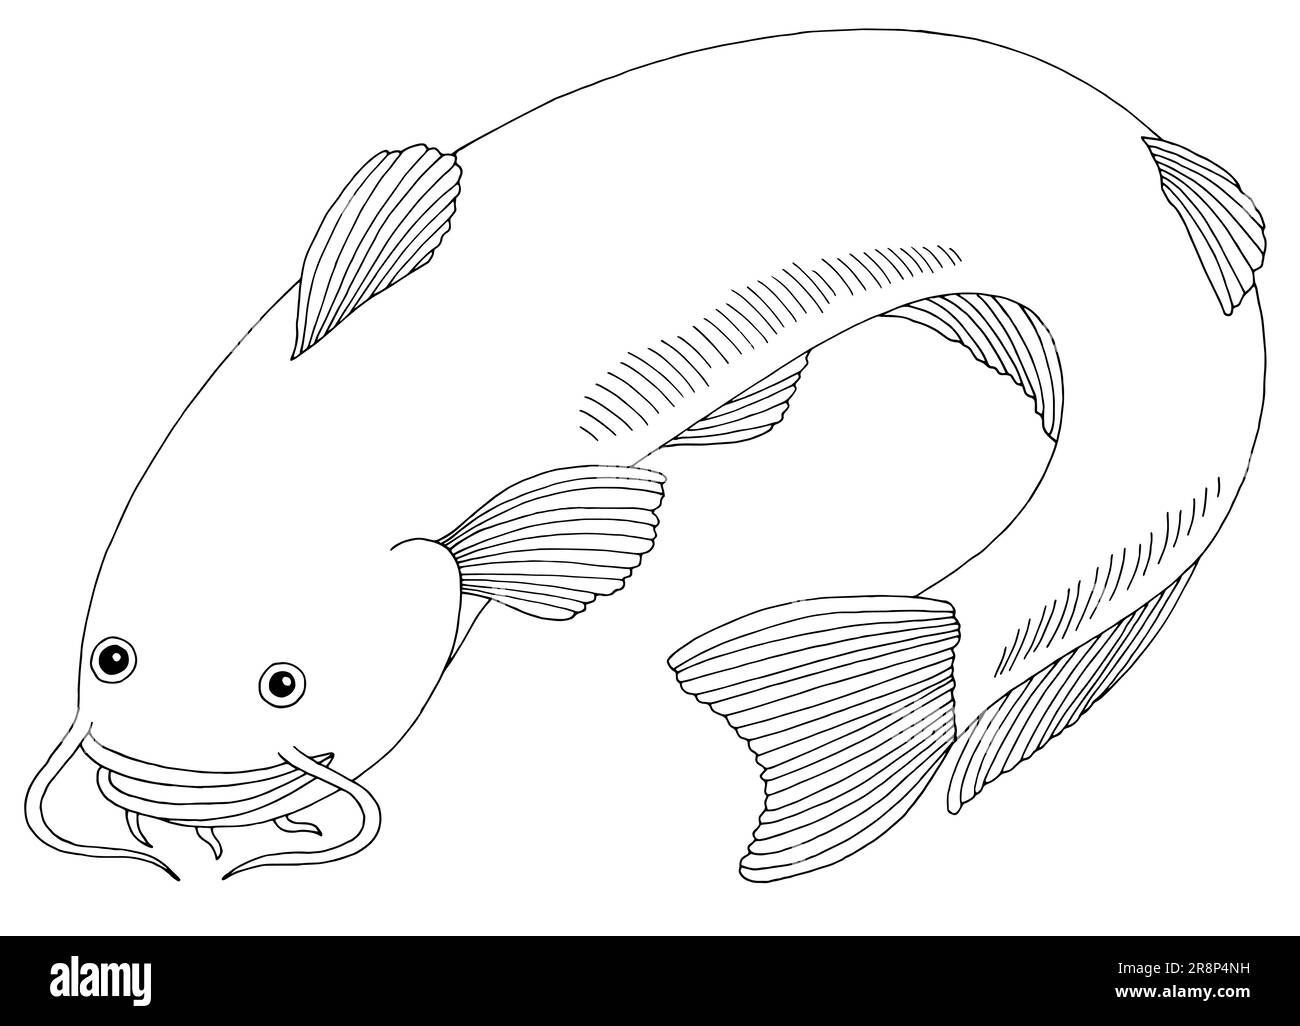 Vettore di illustrazione isolato in bianco e nero grafico Catfish Illustrazione Vettoriale